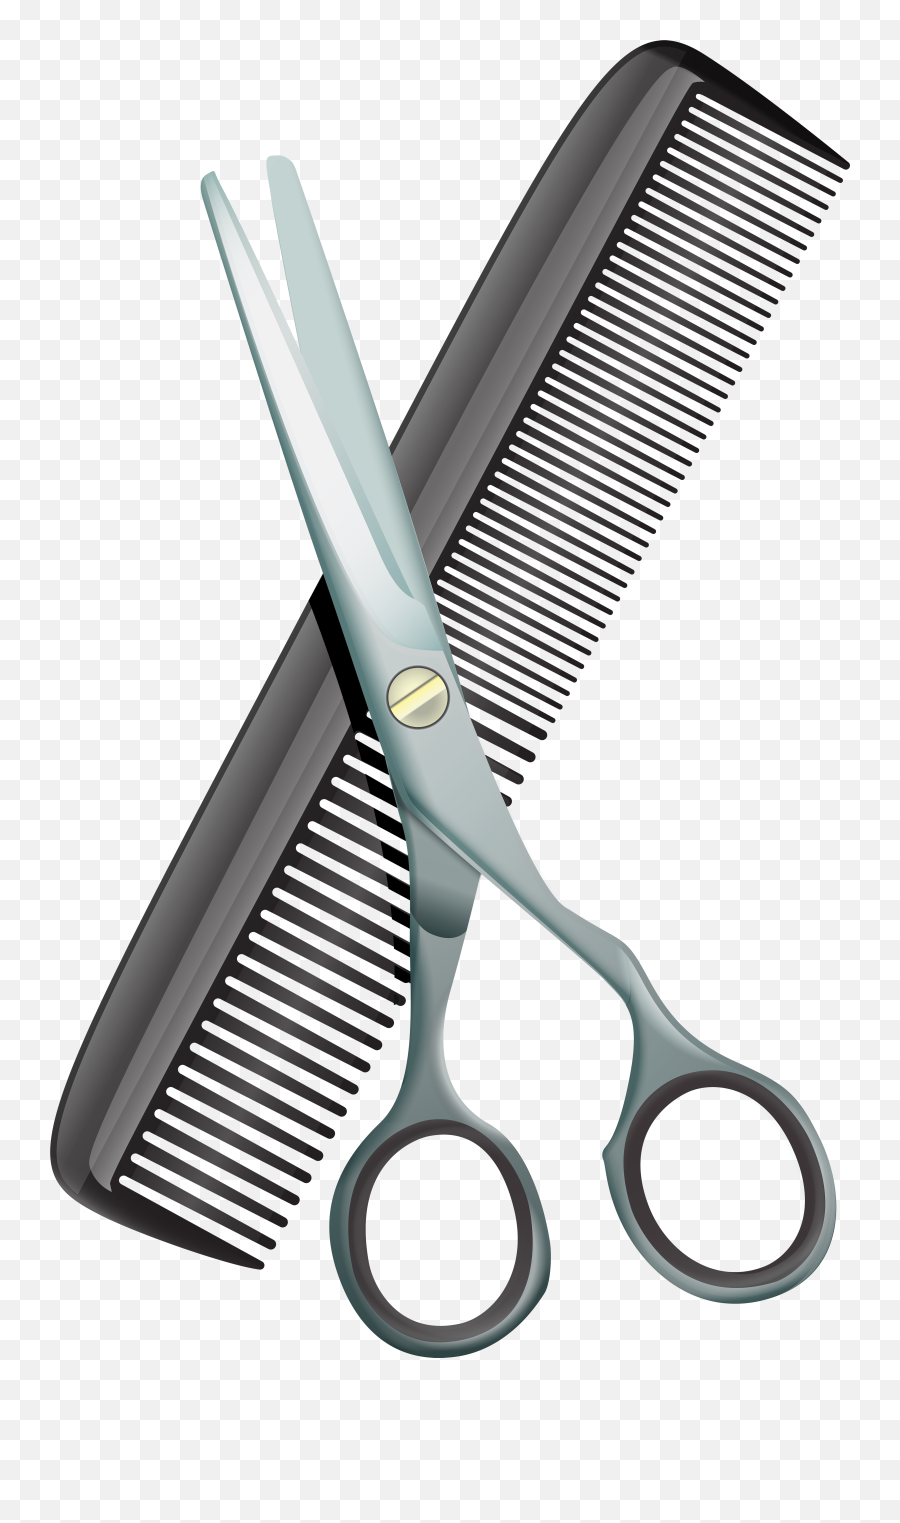 Scissors And Comb - Comb And Scissors Png,Scissors Transparent